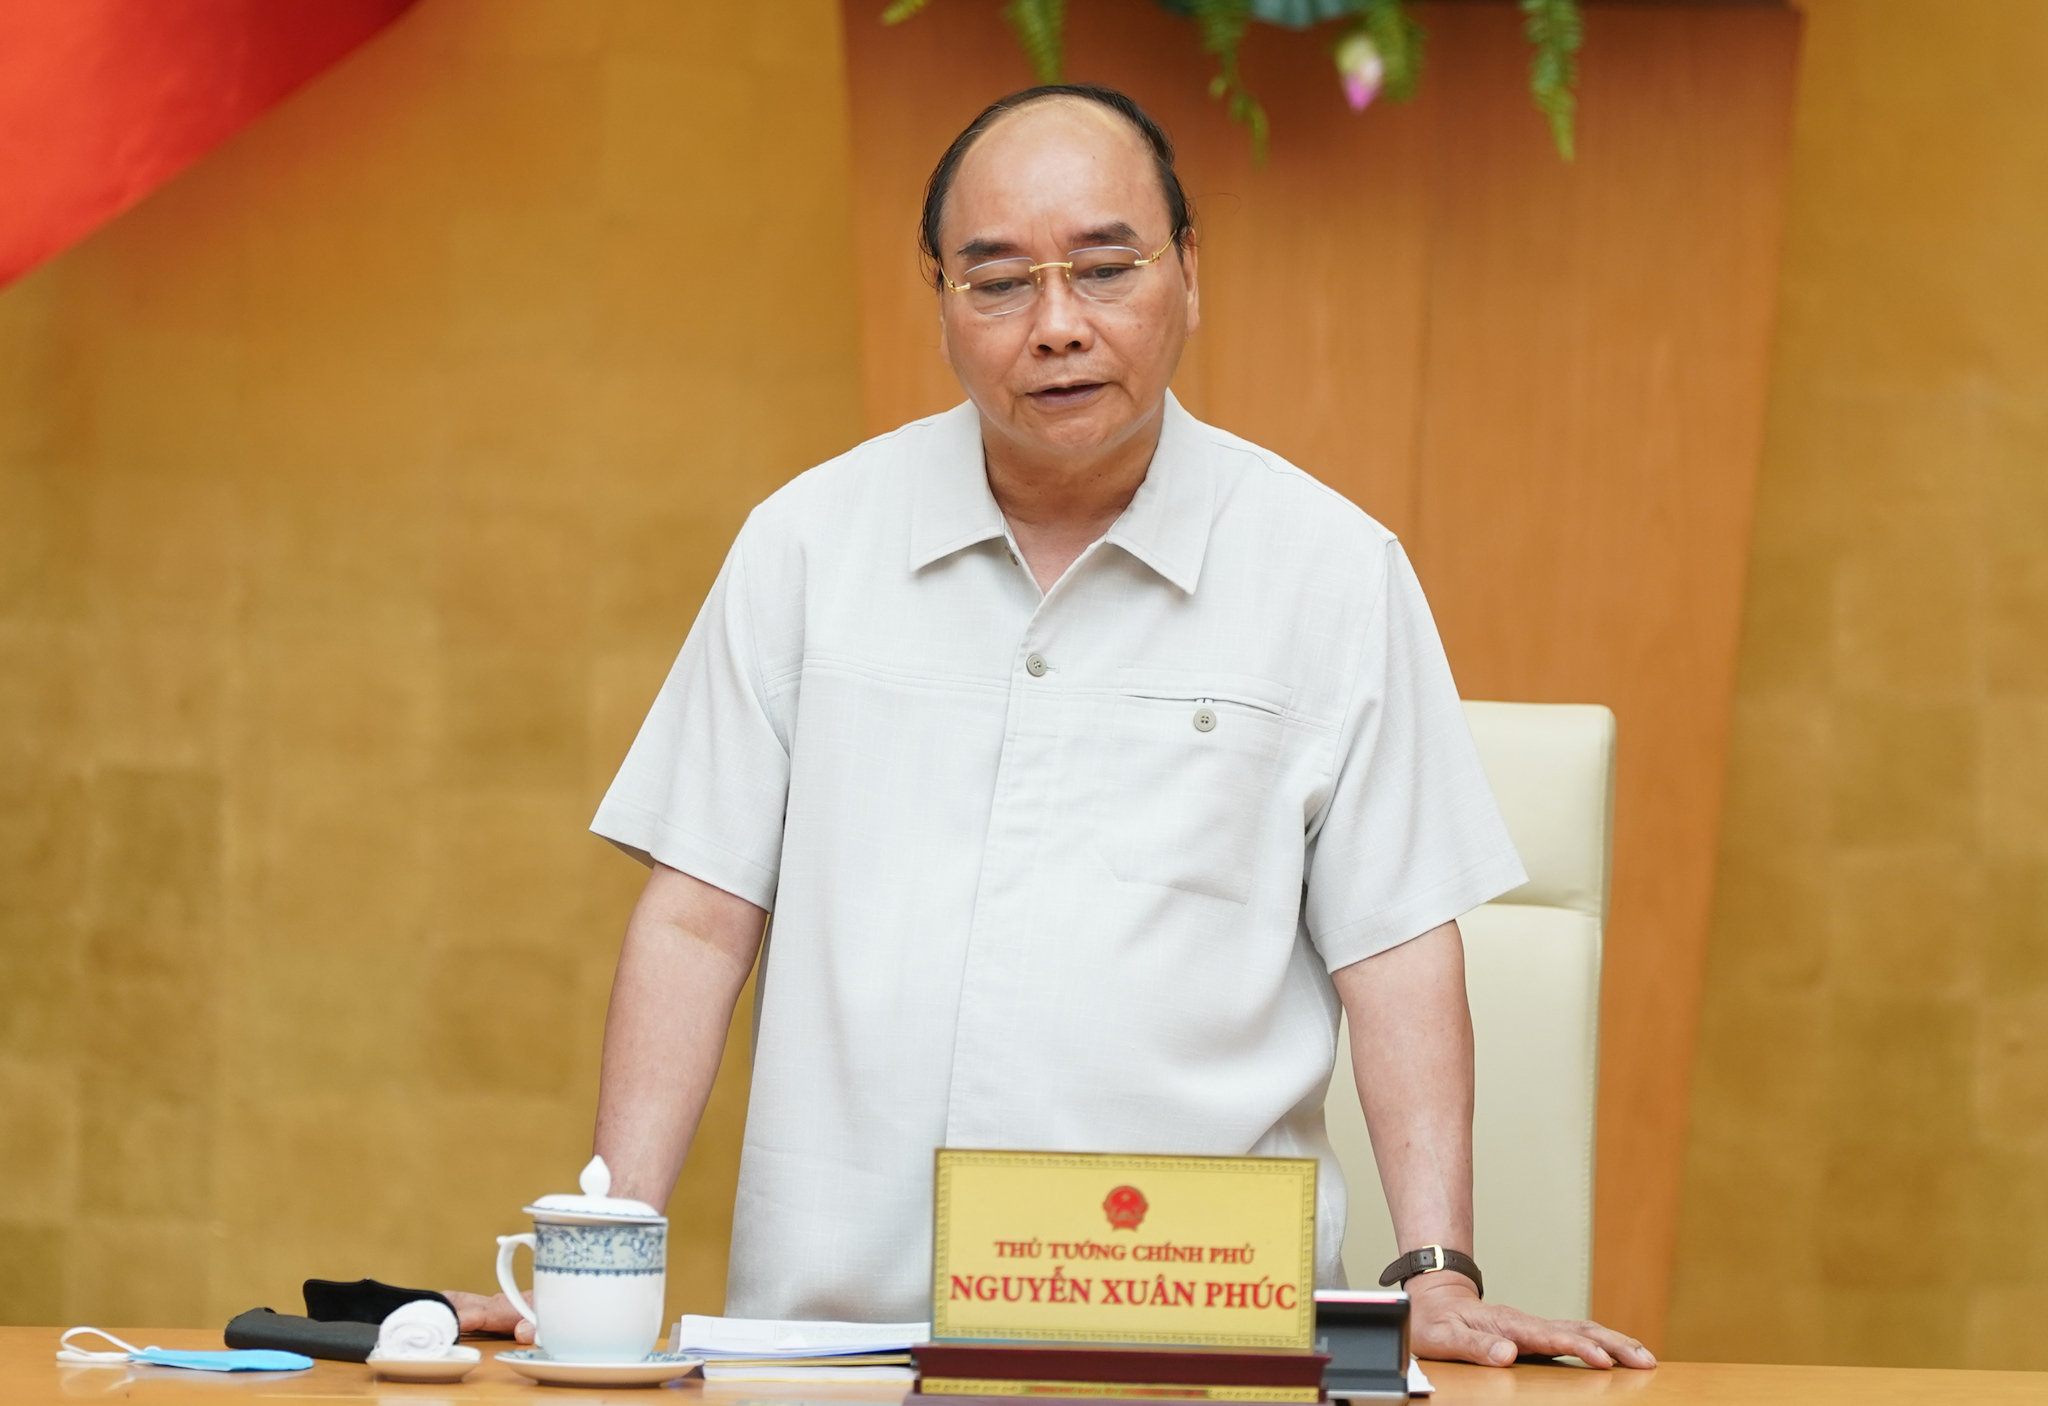  Thủ tướng Nguyễn Xuân Phúc phát biểu kết luận cuộc họp. Ảnh: VGP/Quang Hiếu  